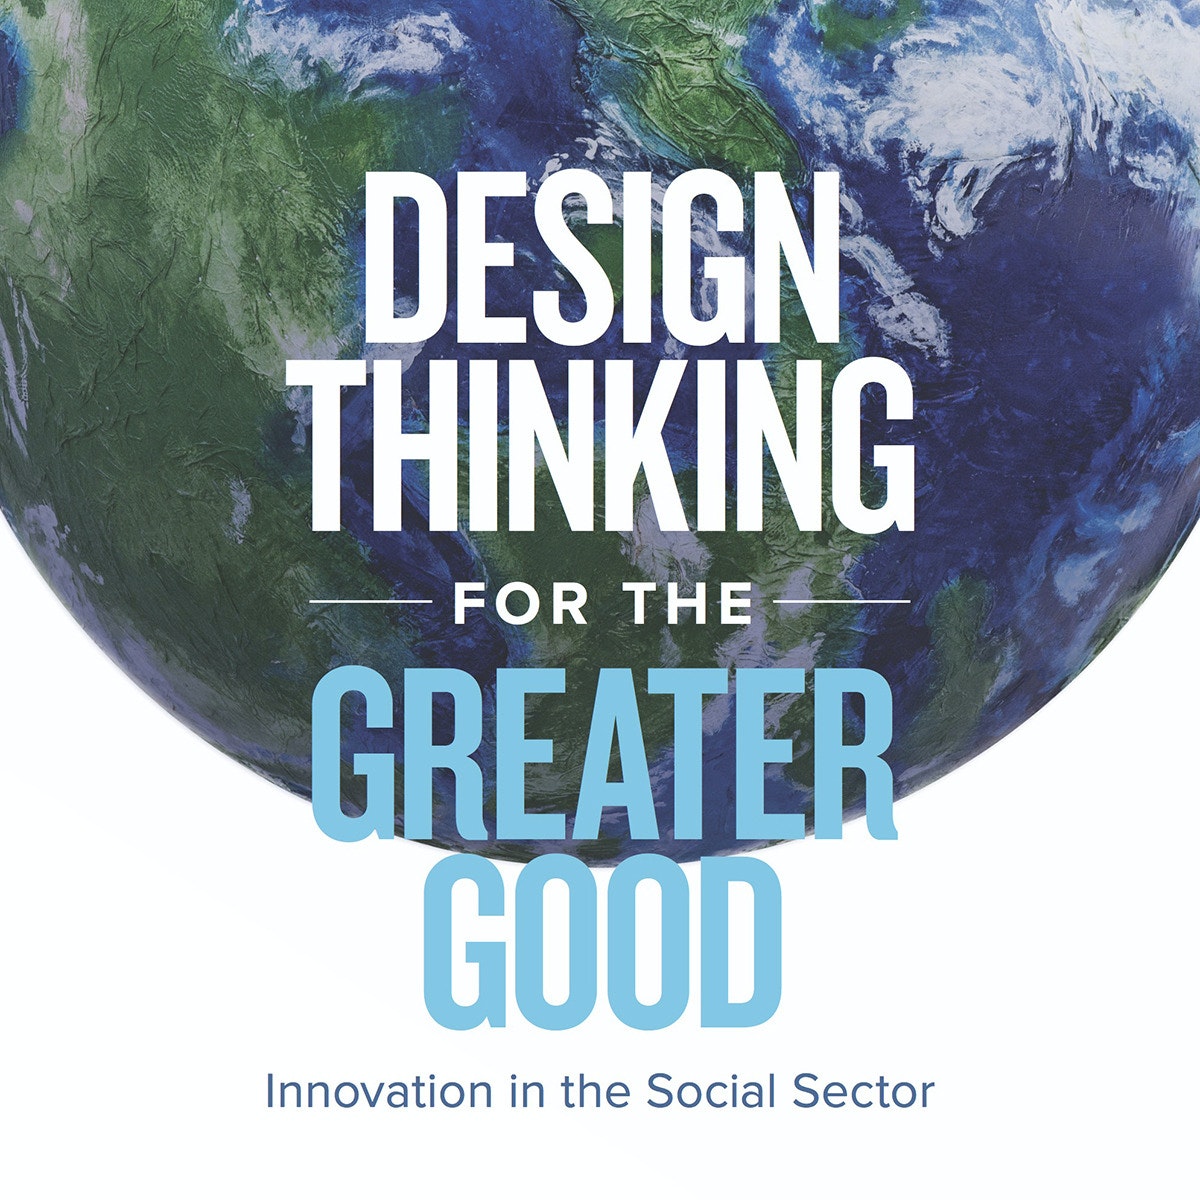 تفکر طراحی برای خیر بزرگتر: نوآوری در بخش اجتماعی